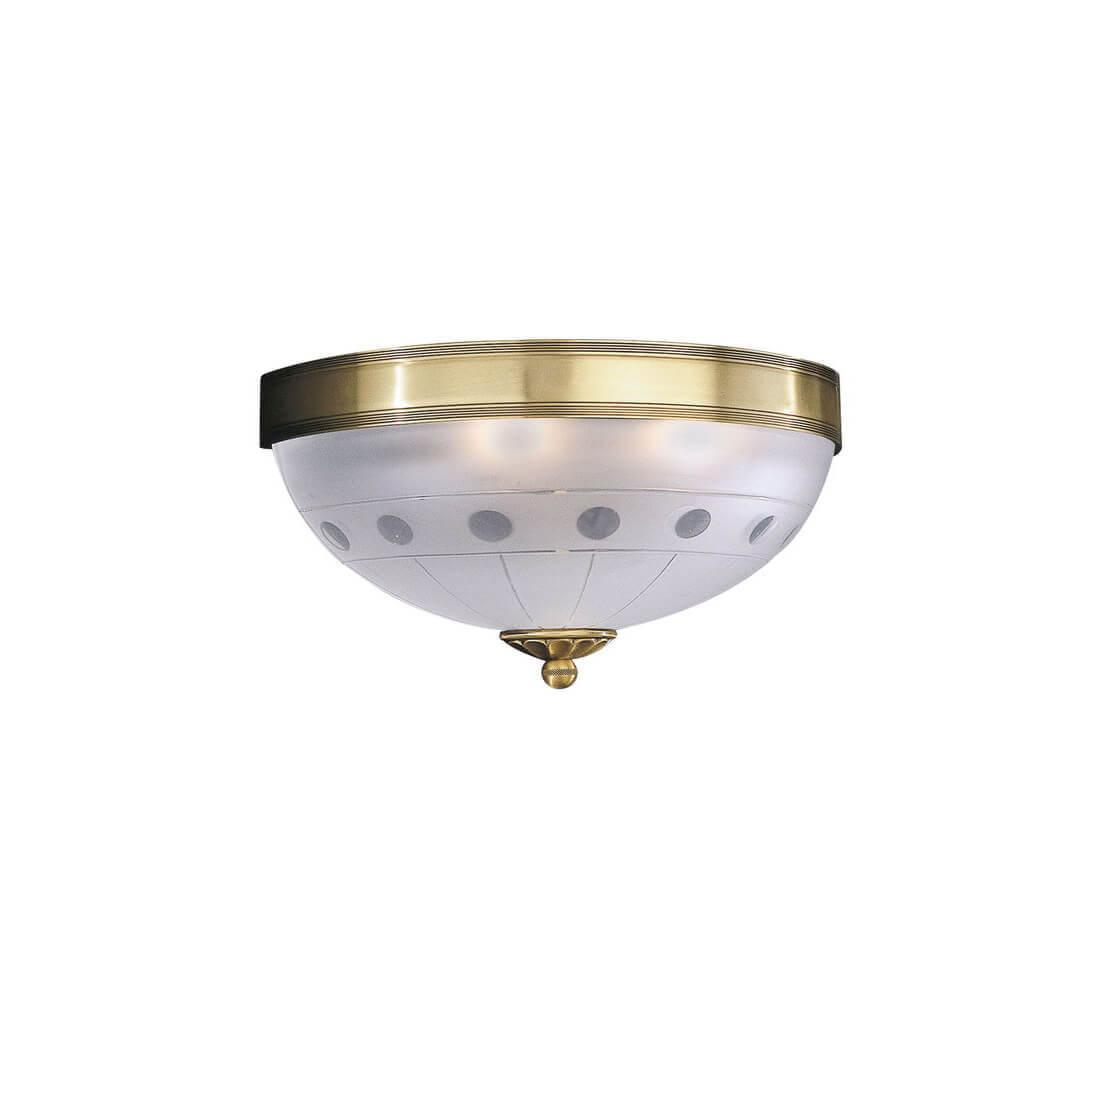 Настенный светильник Reccagni Angelo A.2304/2 настенный смеситель bronze de luxe